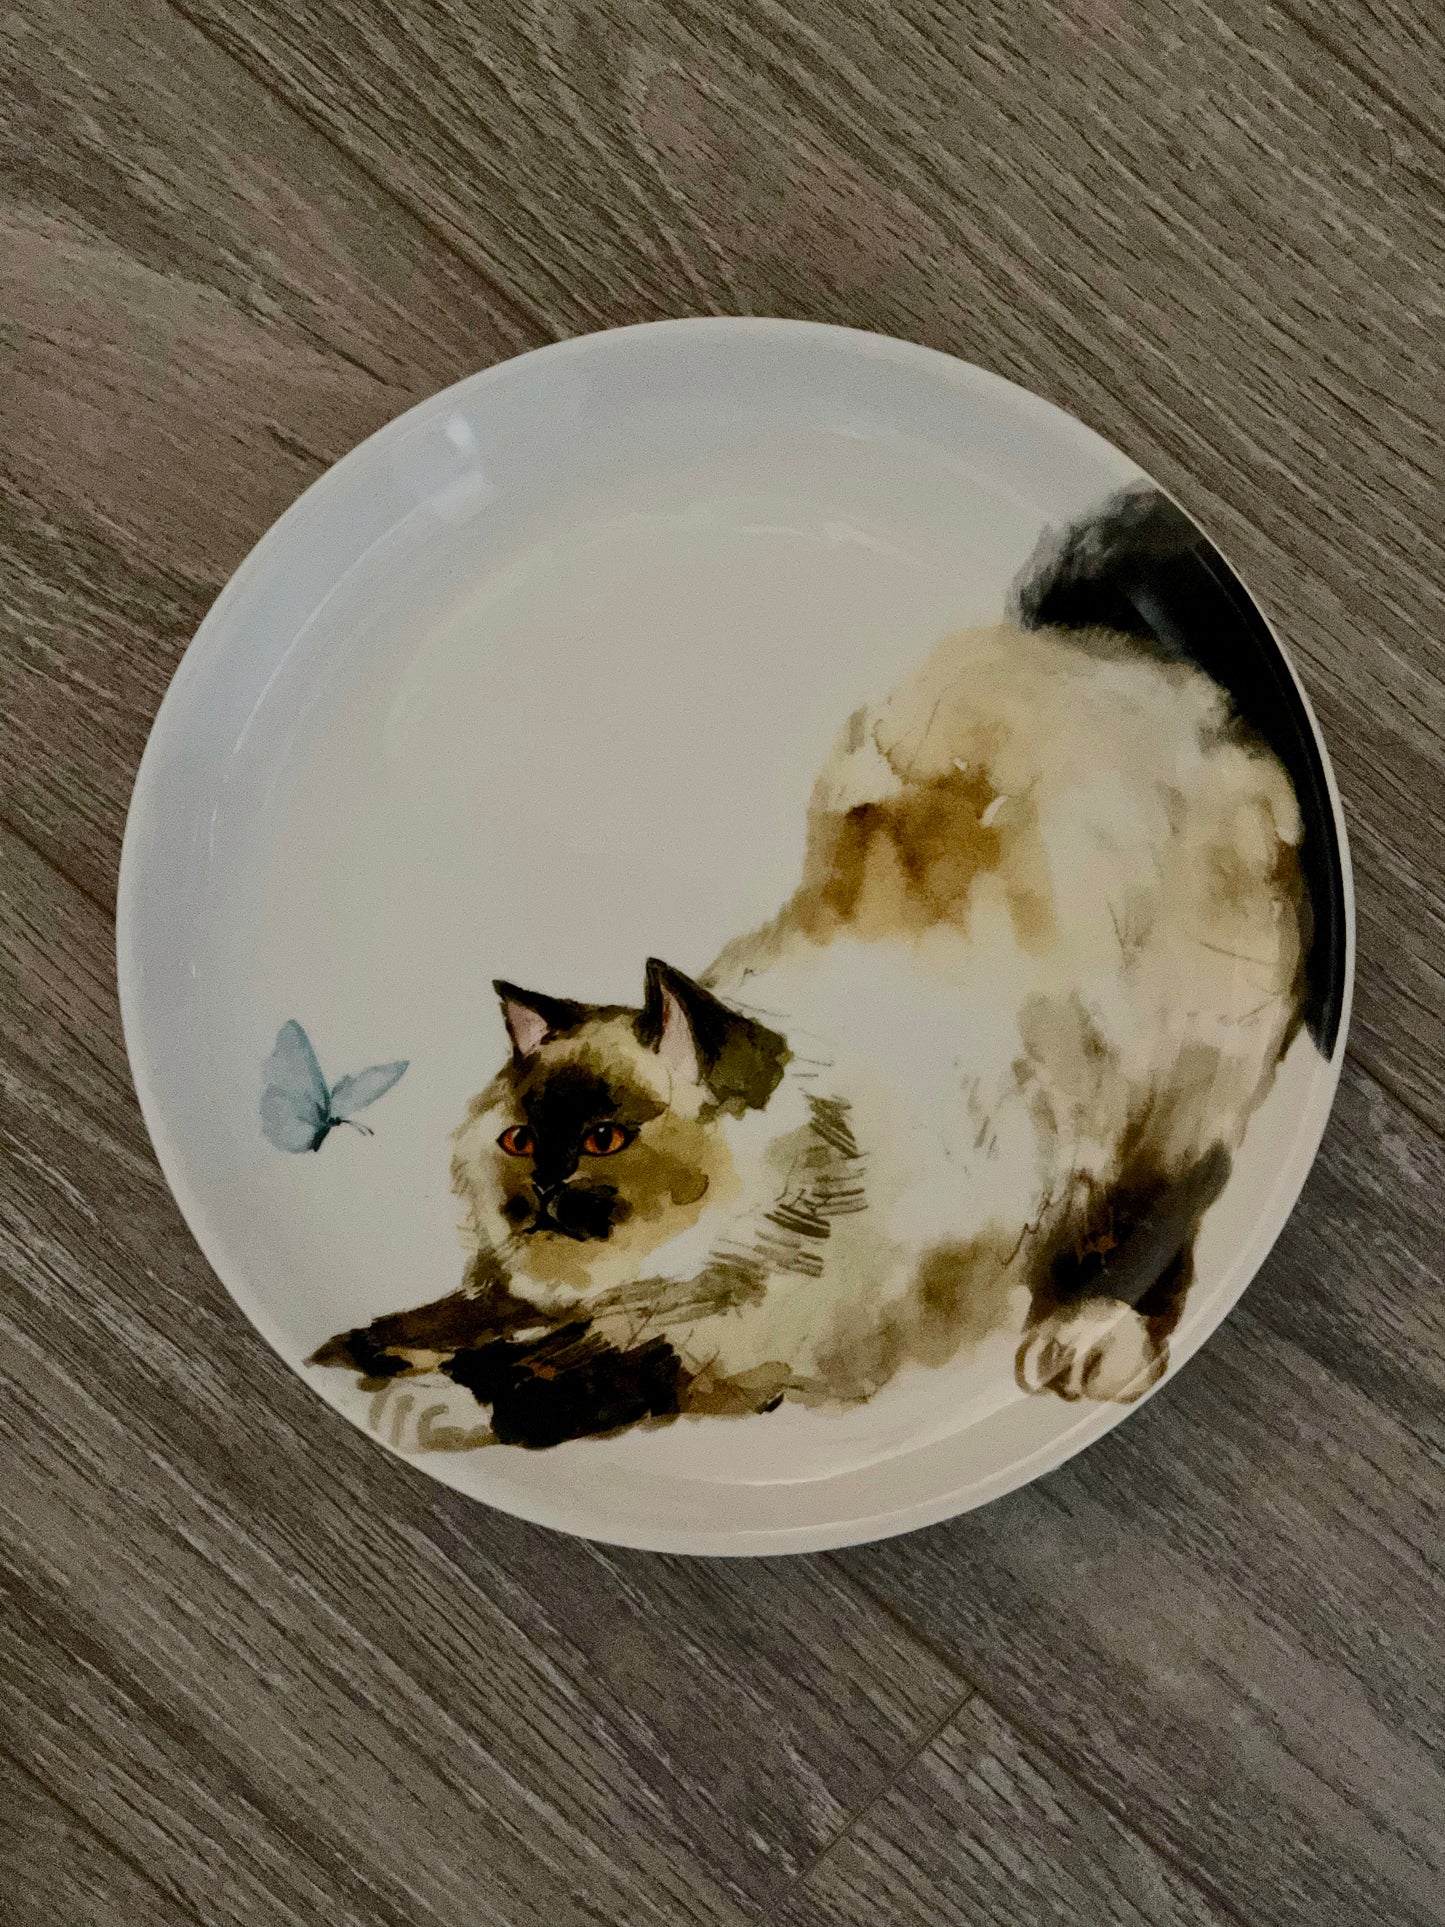 Retired Pier One Cat Plates, Kitten Plates, Home Decor